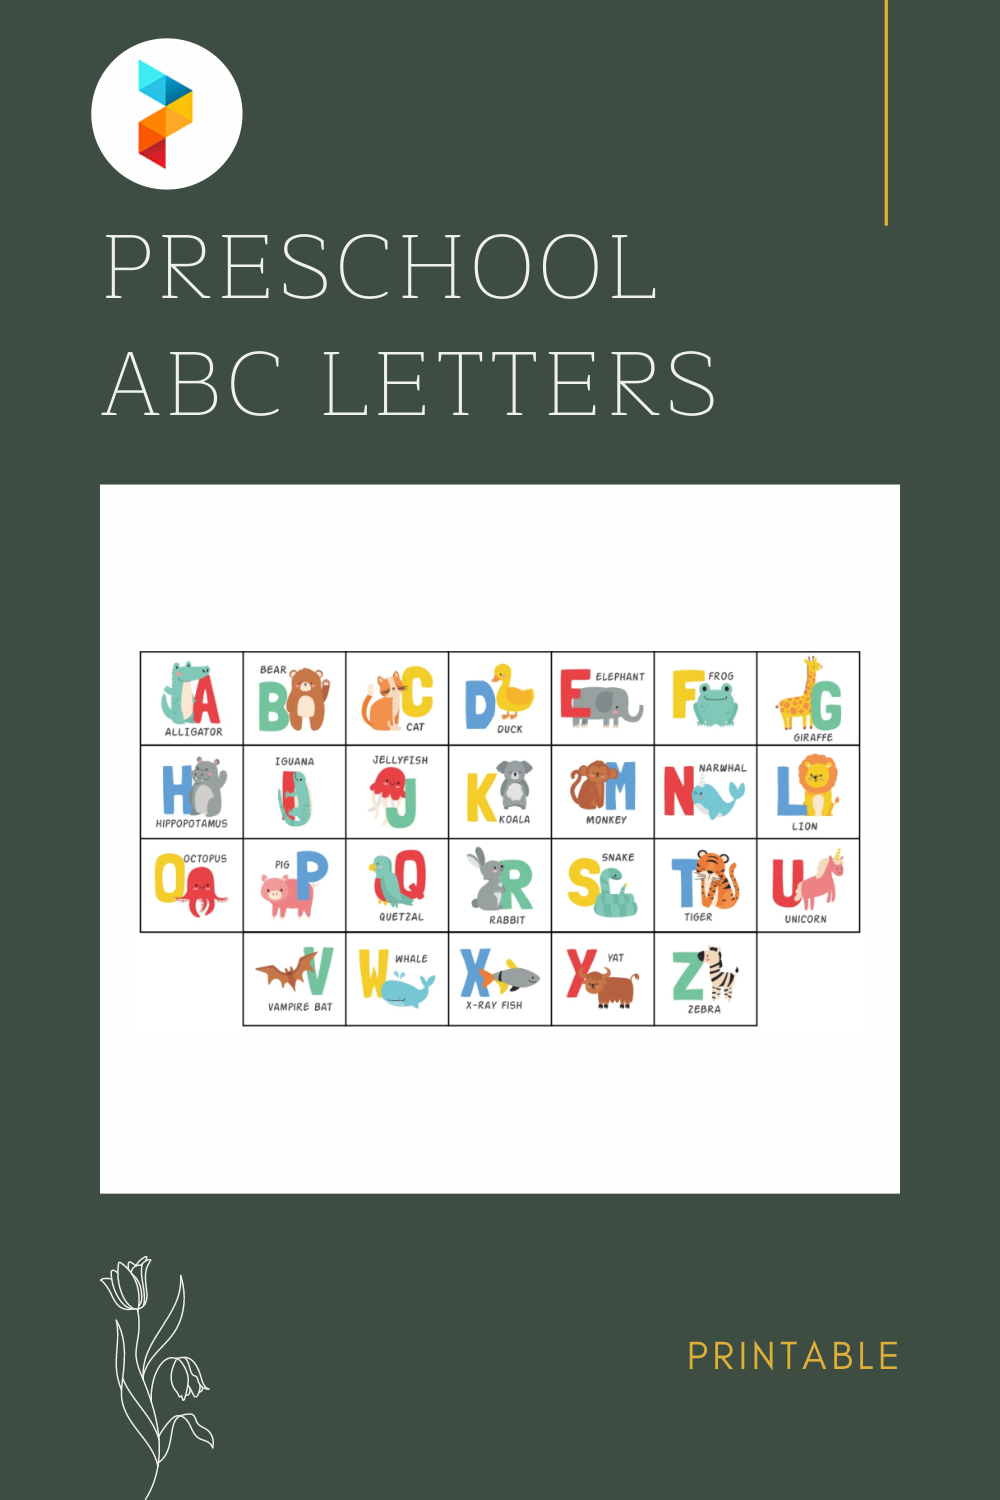 6 Best Preschool ABC Letters Printable - printablee.com